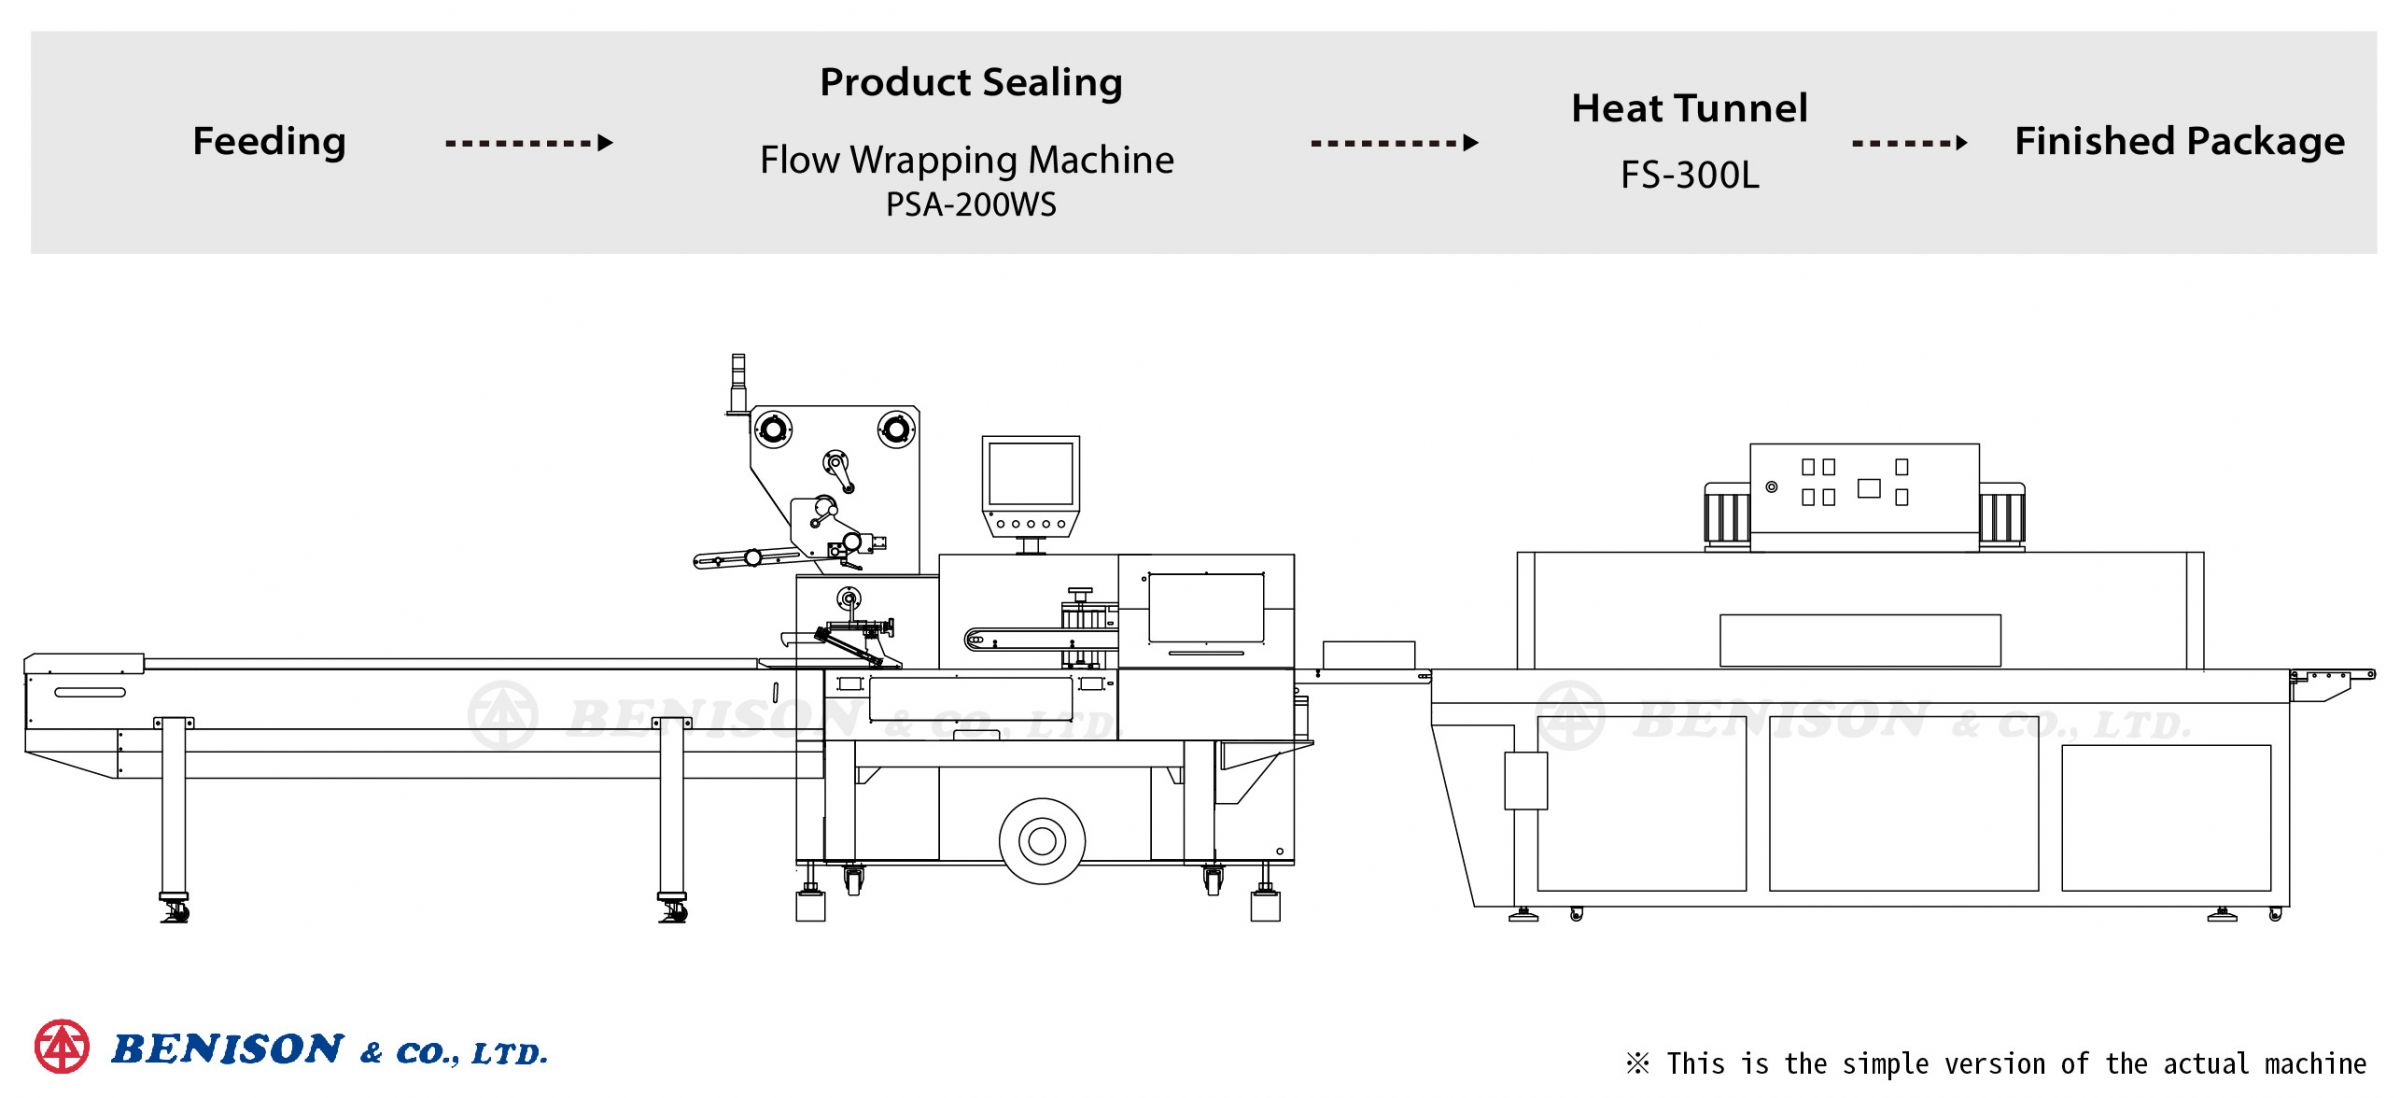 آلة تغليف تدفق PSA-200WS + نفق حراري FS-300L لحلول منتجات غطاء المقبس